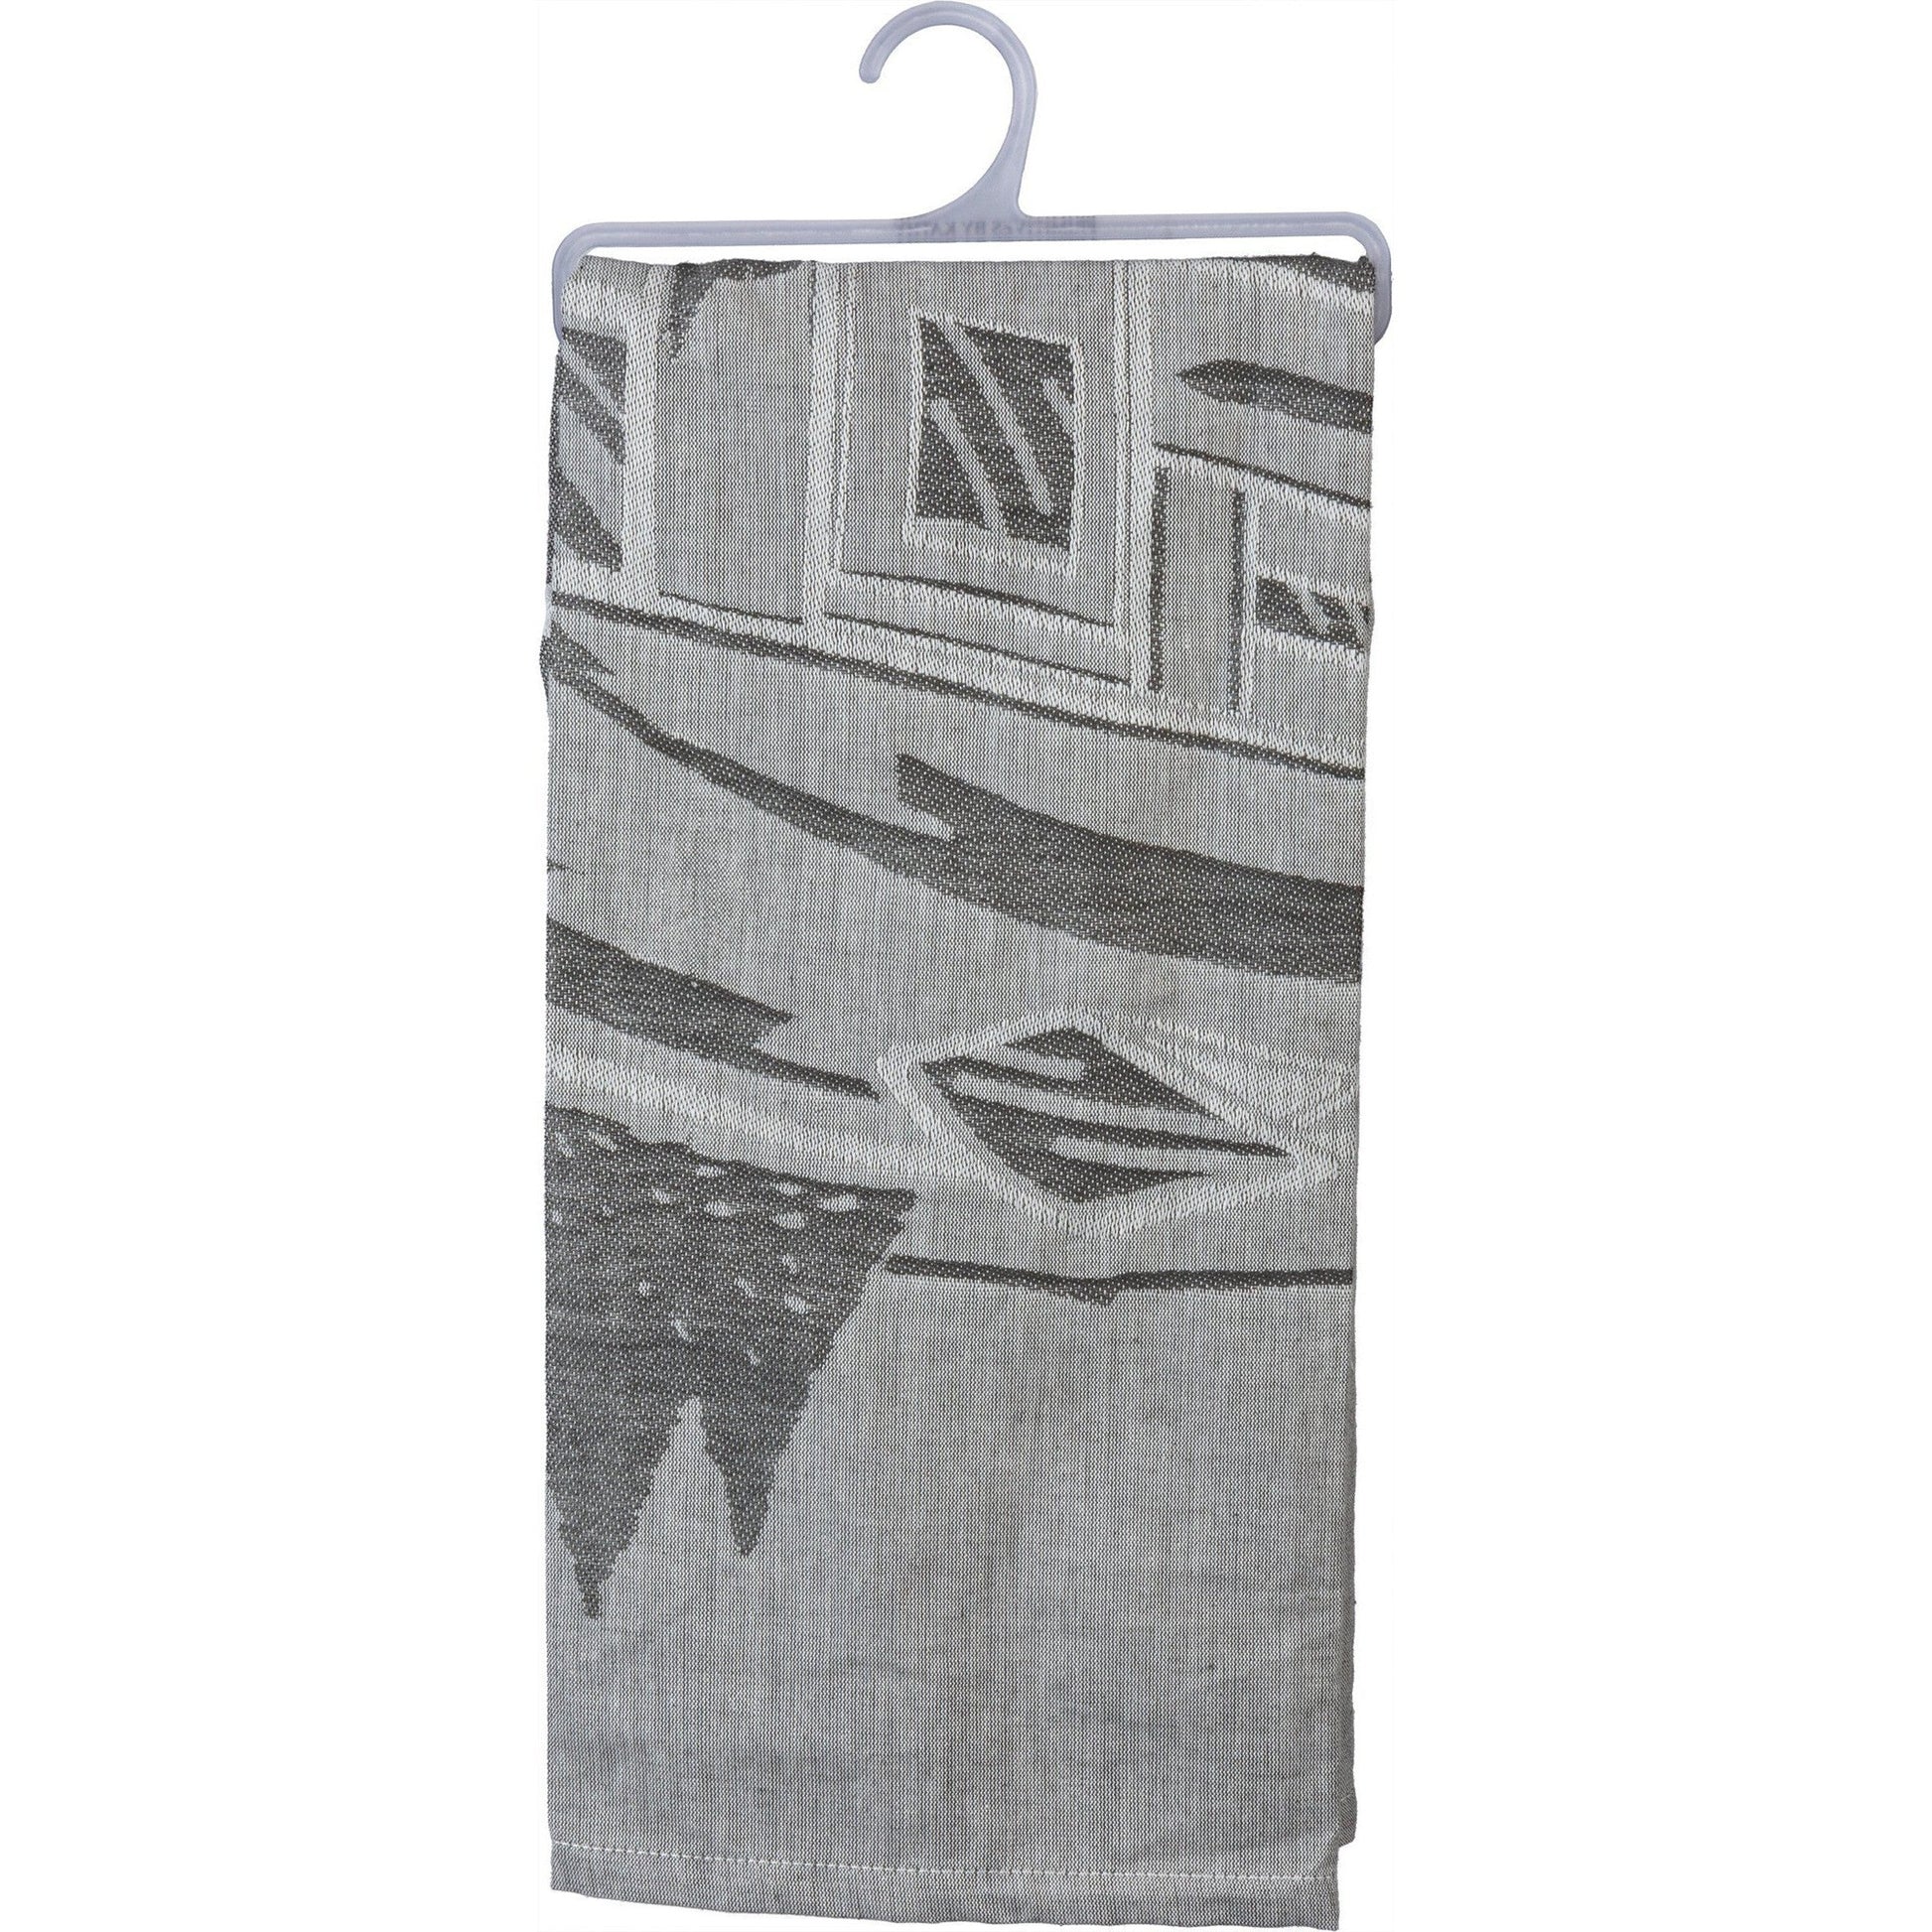 Happy Camper Woven Dish Cloth Towel | Novelty Tea Towels | Cute Kitchen Hand Towel | 20" x 28"